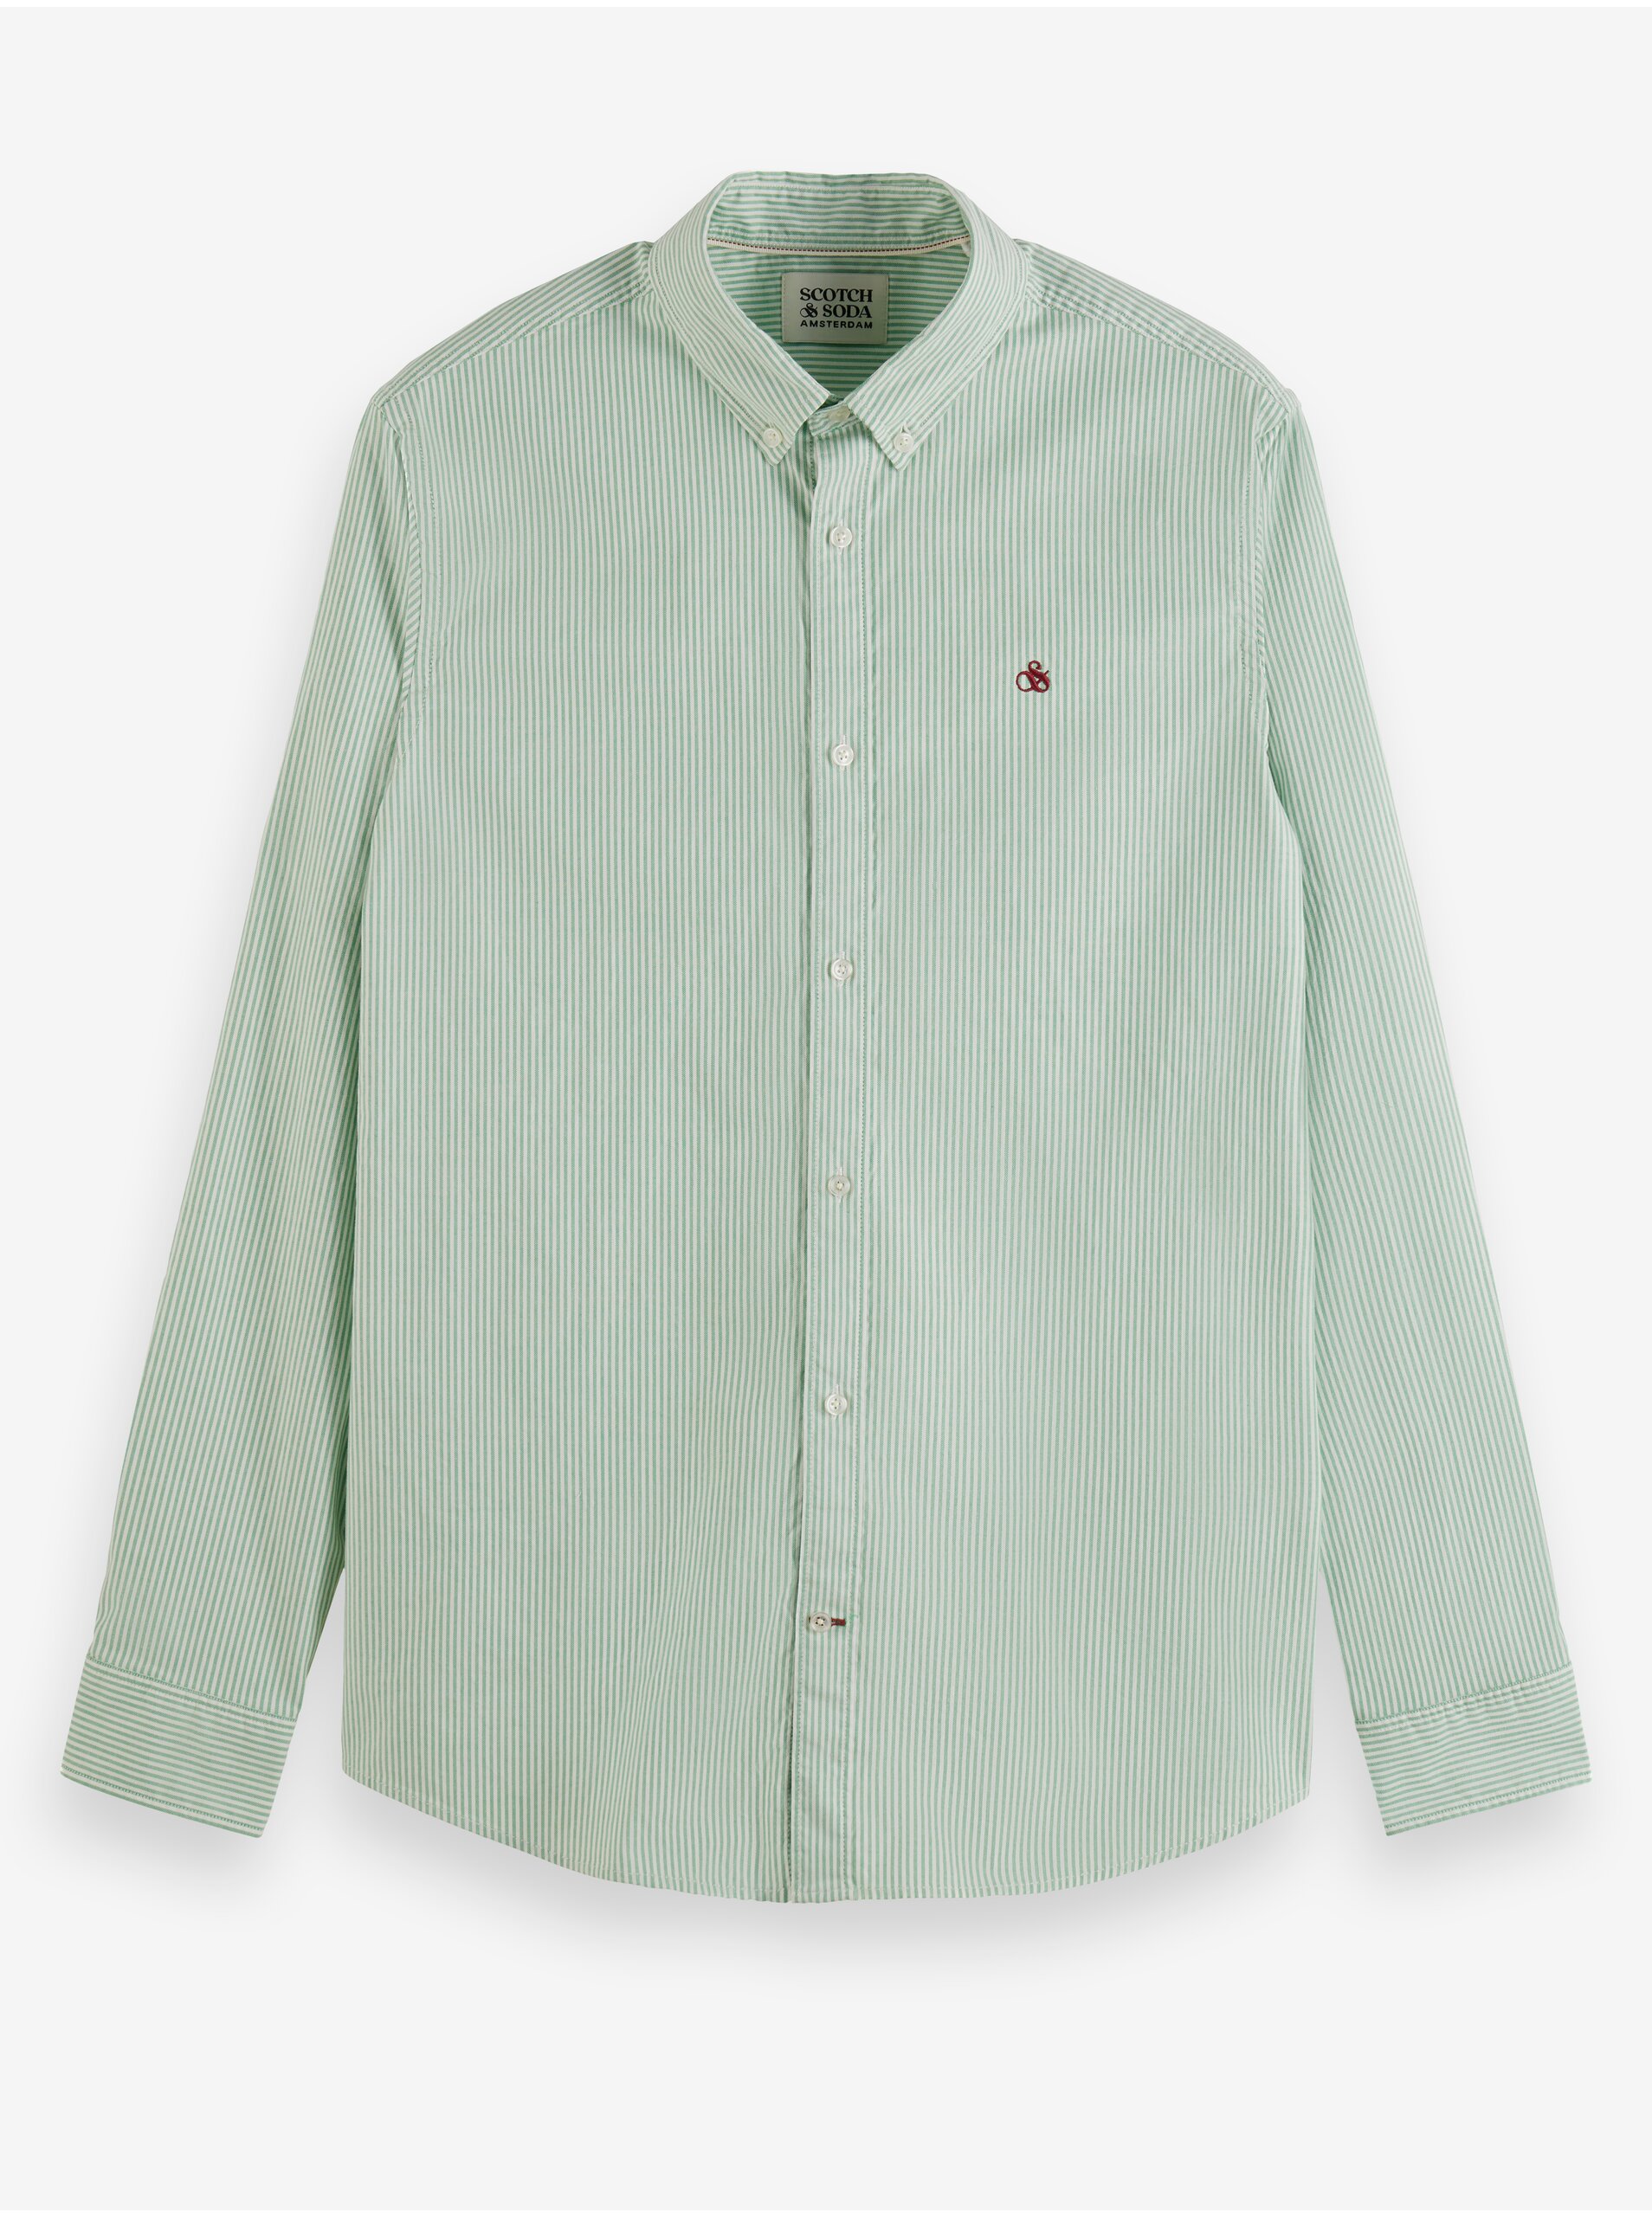 Lacno Svetlo zelená pánska pruhovaná košeľa Scotch & Soda Essential Oxford